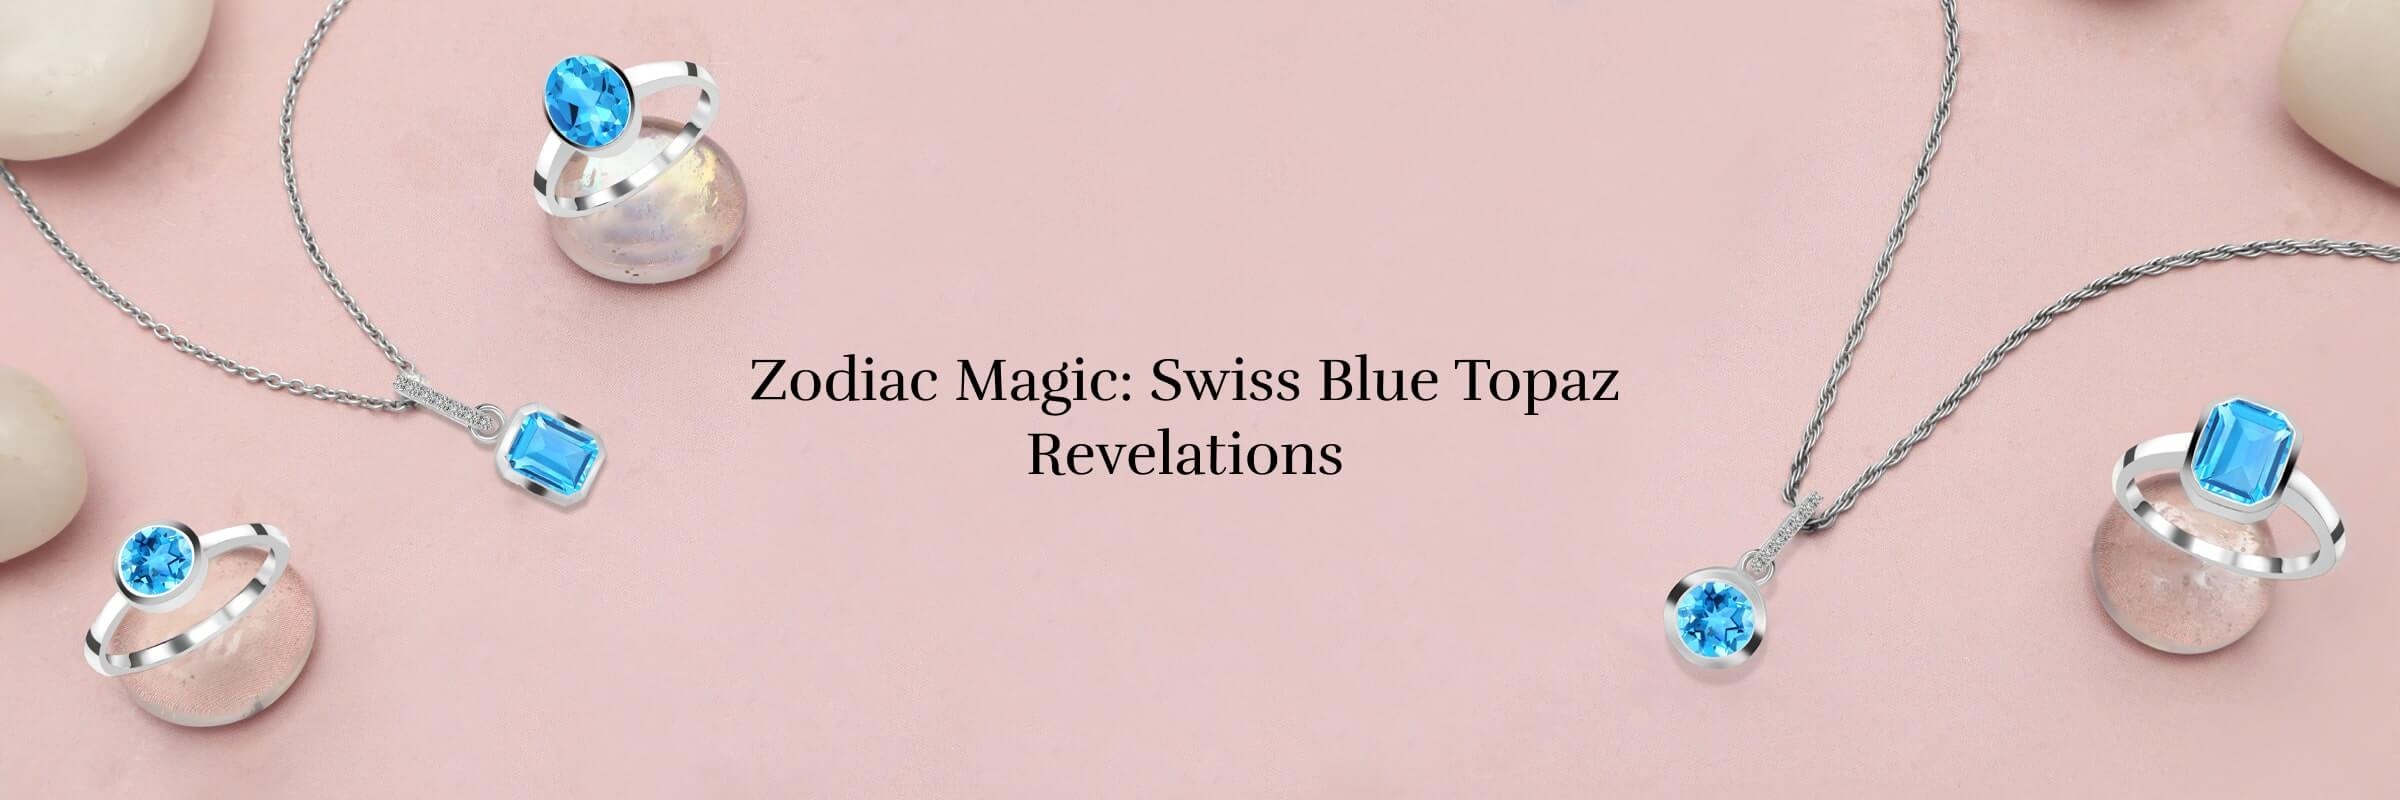 Swiss Blue Topaz Zodiac Sign